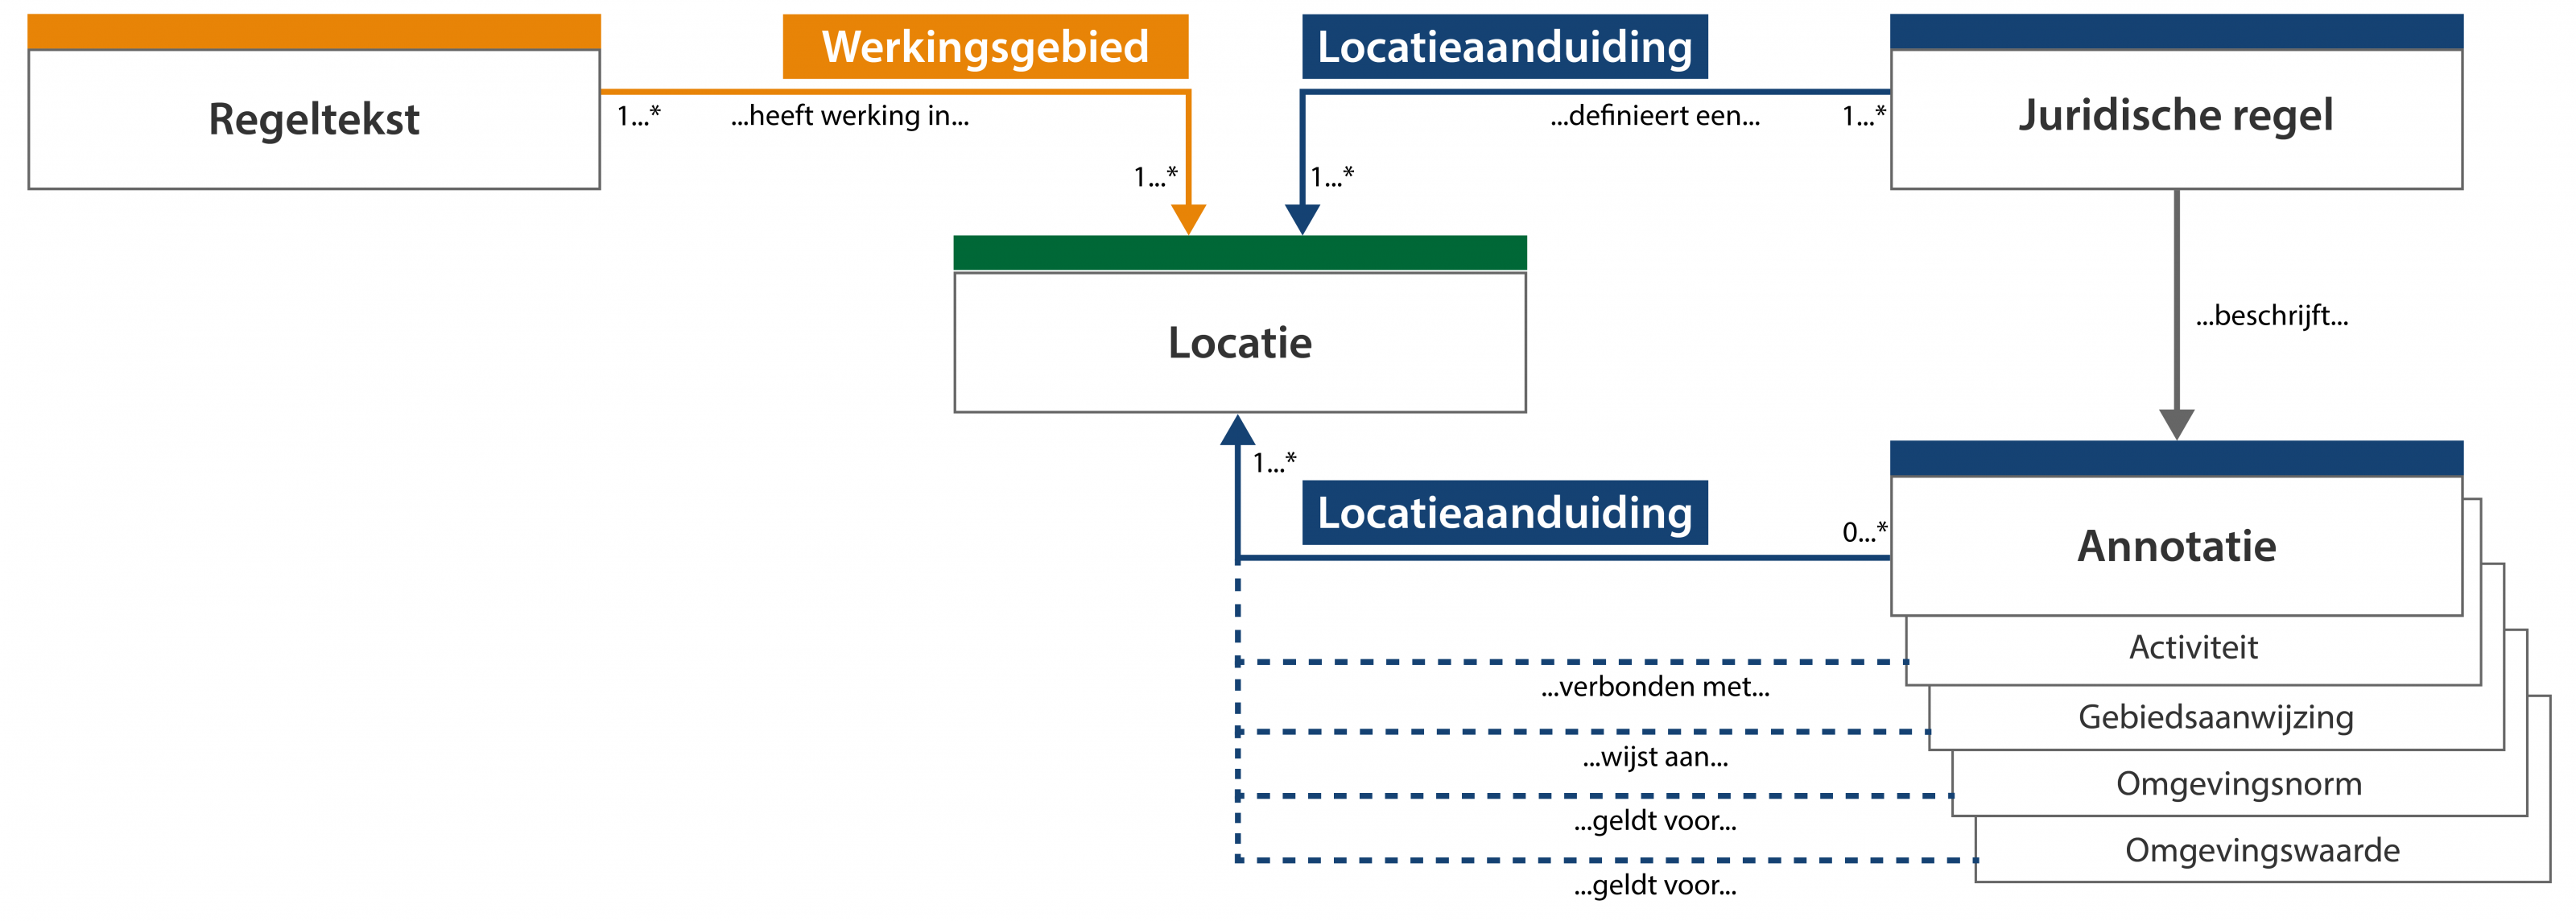 schematische weergave begrippen locatie en werkingsgebied